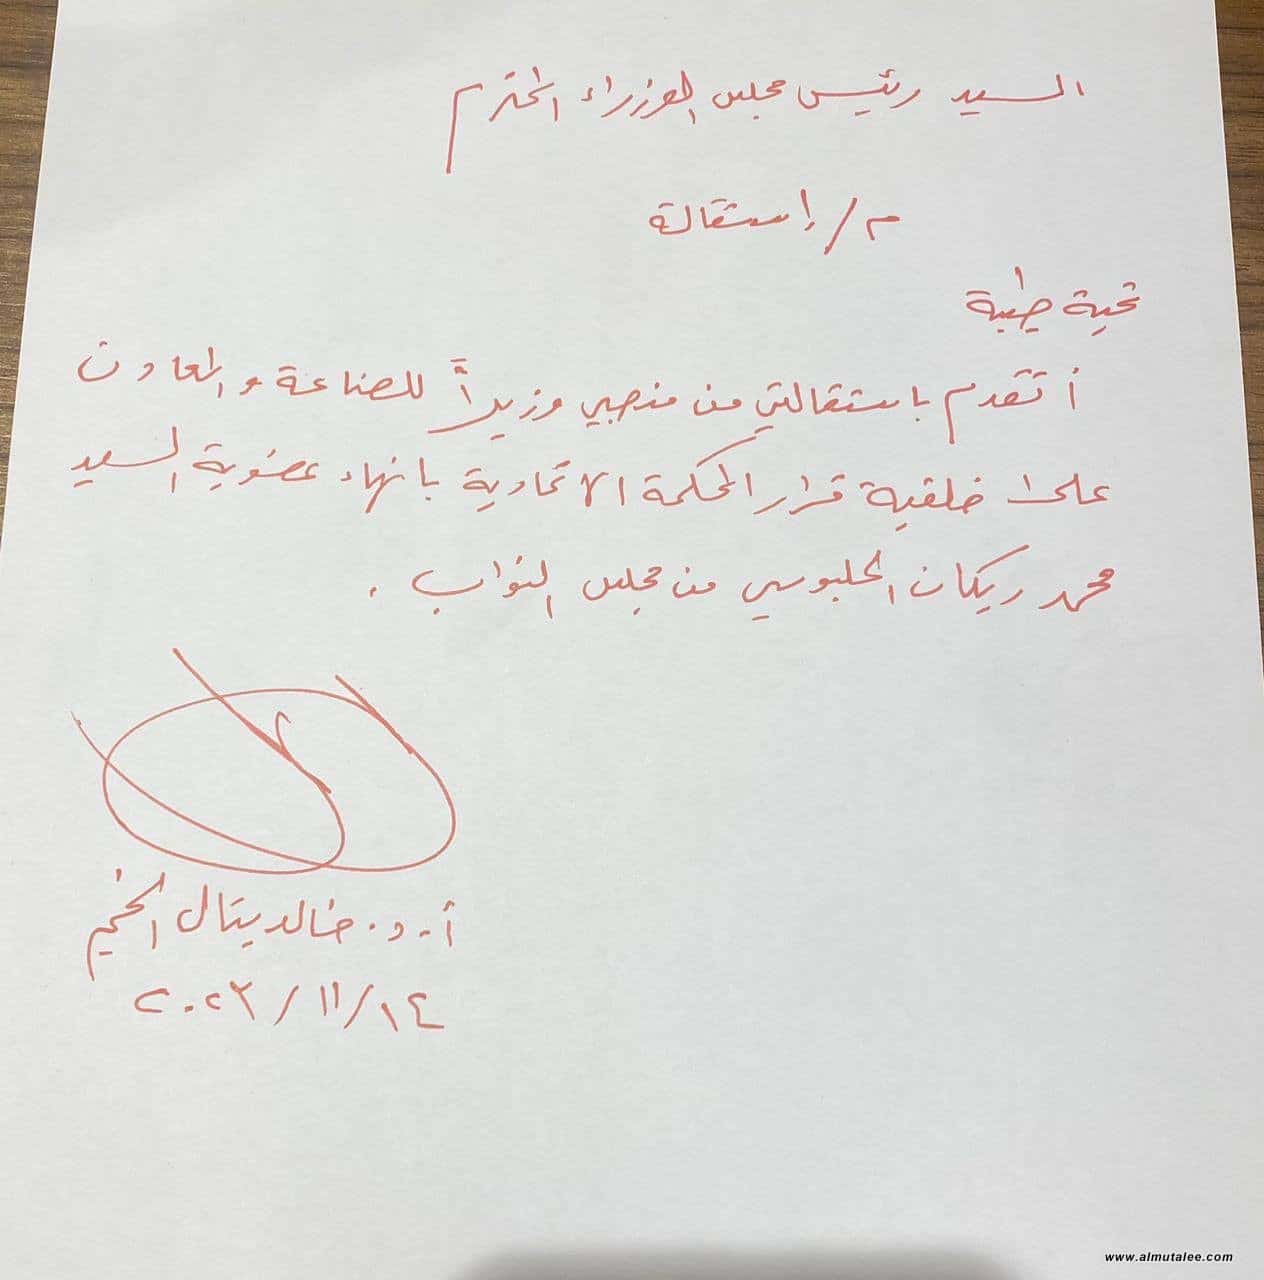 حزب الحلبوسي يستقيل من جميع المناصب الوزارية ويعلن مقاطعة البرلمان العراقي